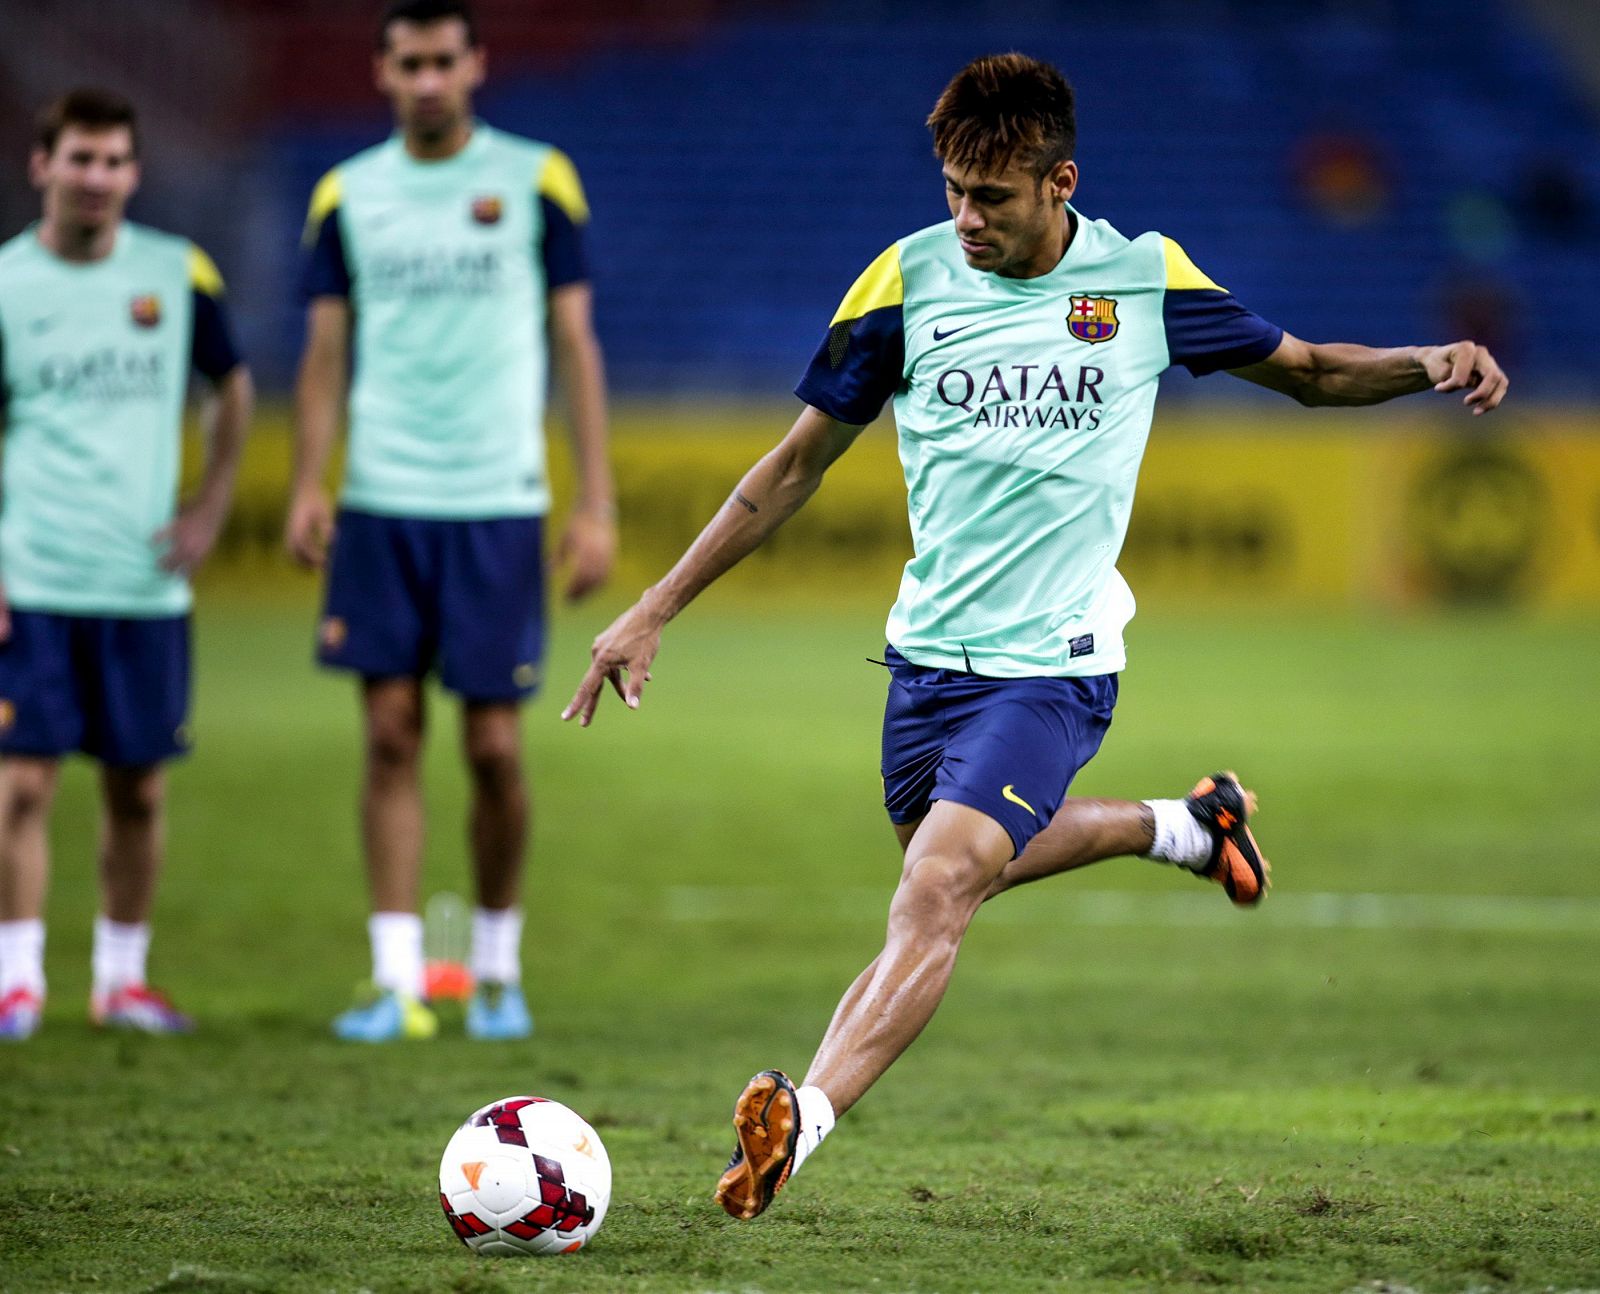 El nuevo delantero brasileño del FC Barcelona Neymar lanza un disparo durante un entrenamiento del equipo en el estadio nacional de Bukit Jalil, cerca de Kuala Lumpur, Malasia.